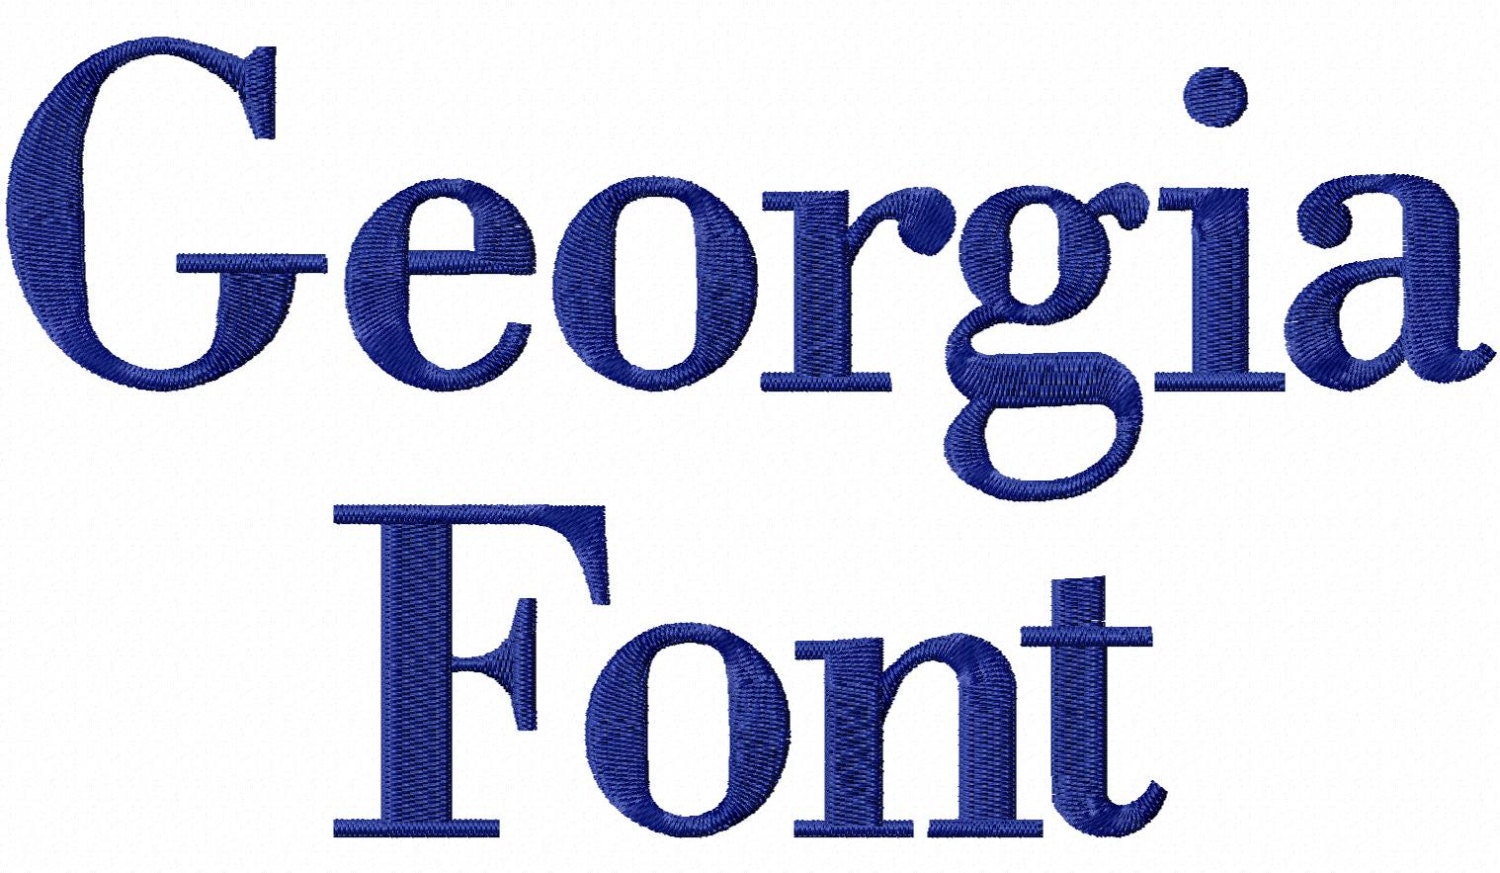 georgia font 1001 free fonts